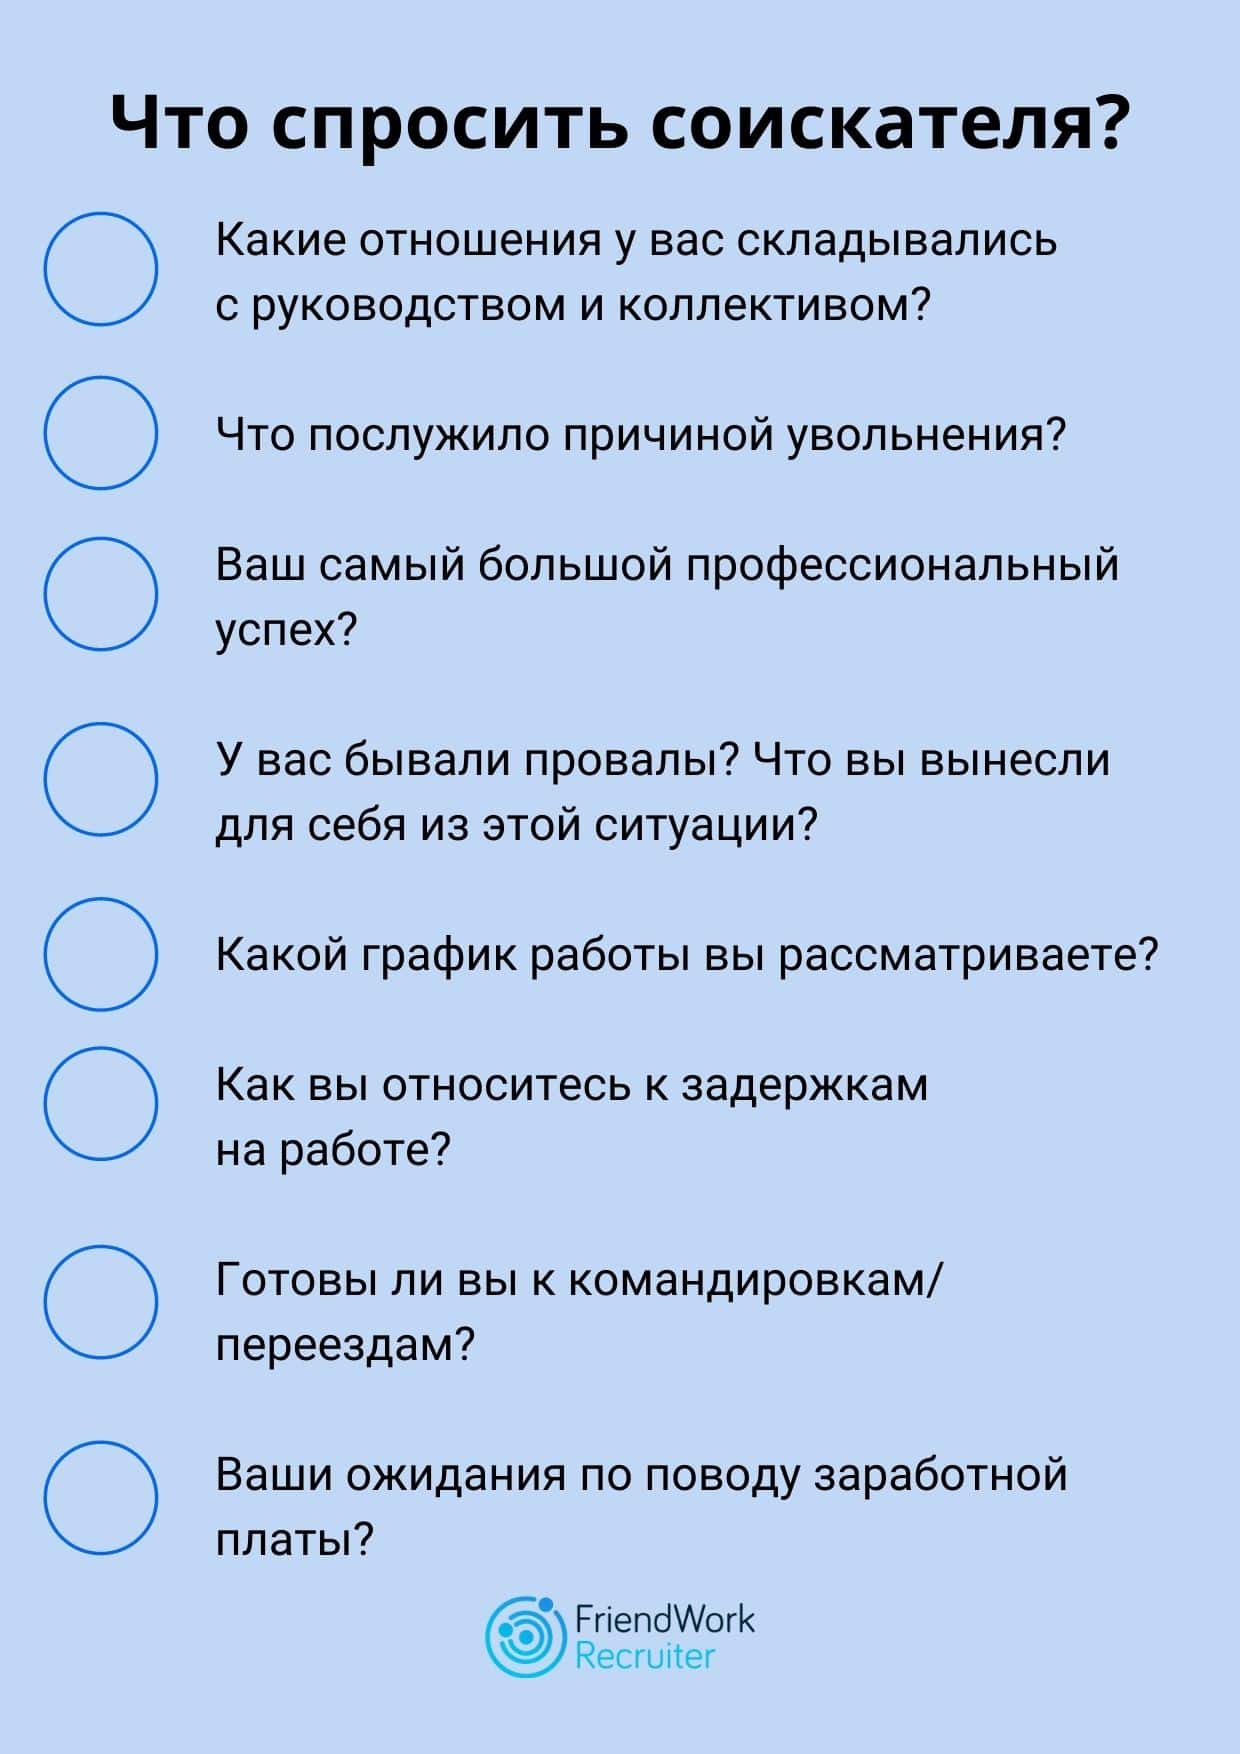 Manpowergroup russia & cis - топ-10 вопросов на собеседовании на позицию администратора и как на них ответить